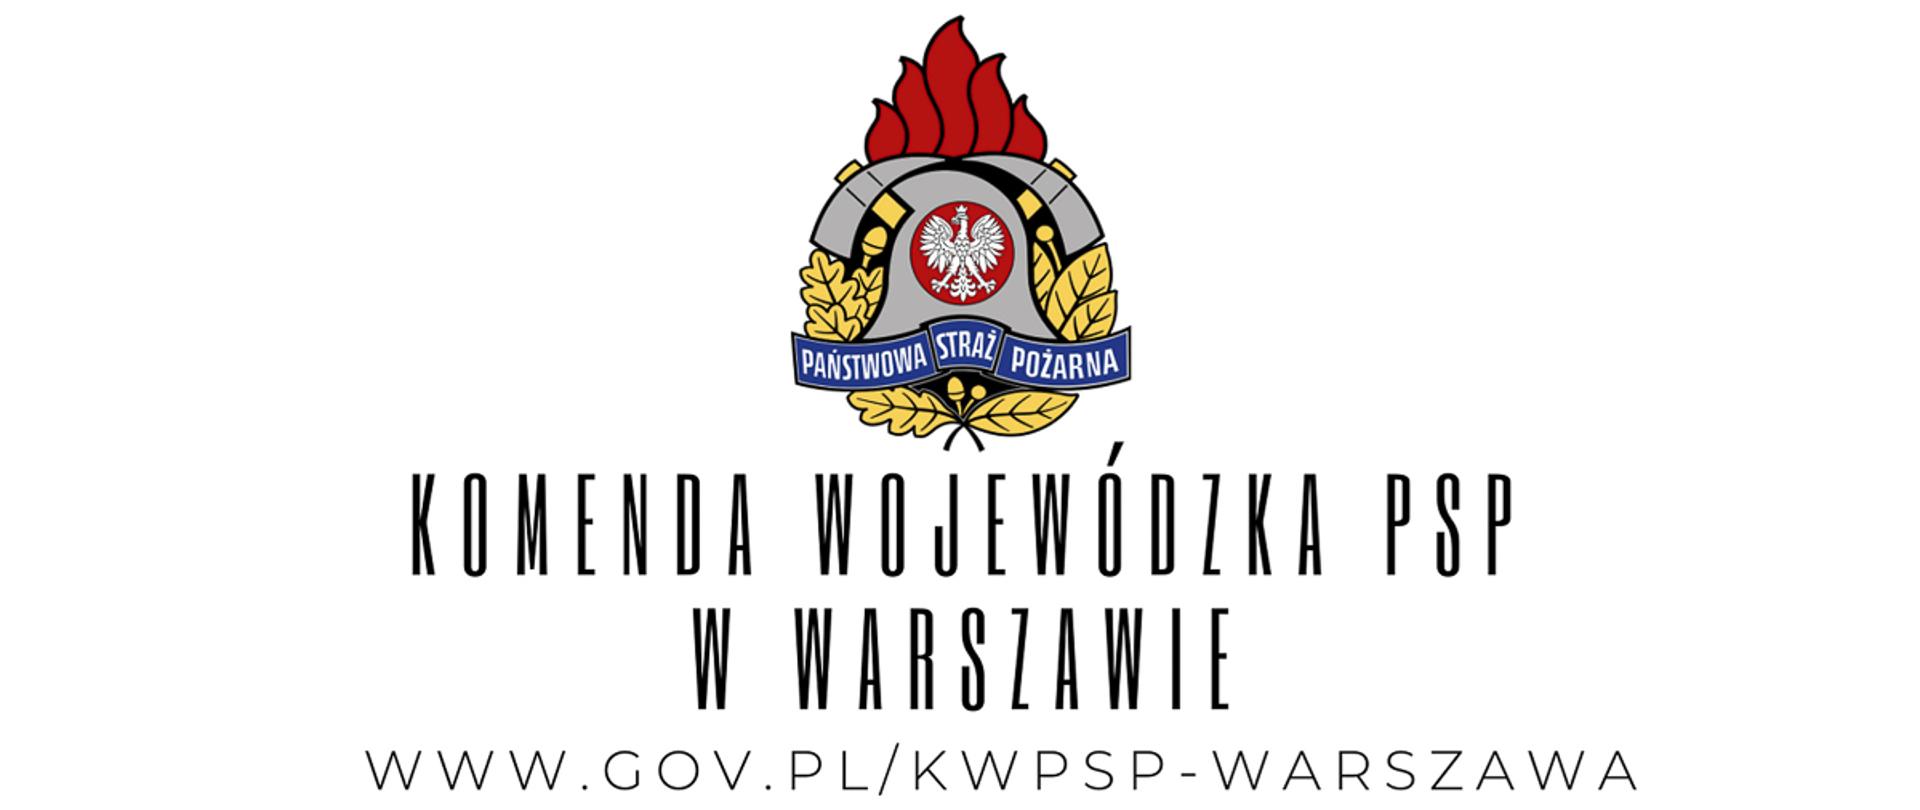 Logotyp Państwowej Straży Pożarnej na białym tle, pod spodem napis Komenda Wojewódzka PSP w Warszawie oraz adres trony internetowej w kolorze czarnym. 